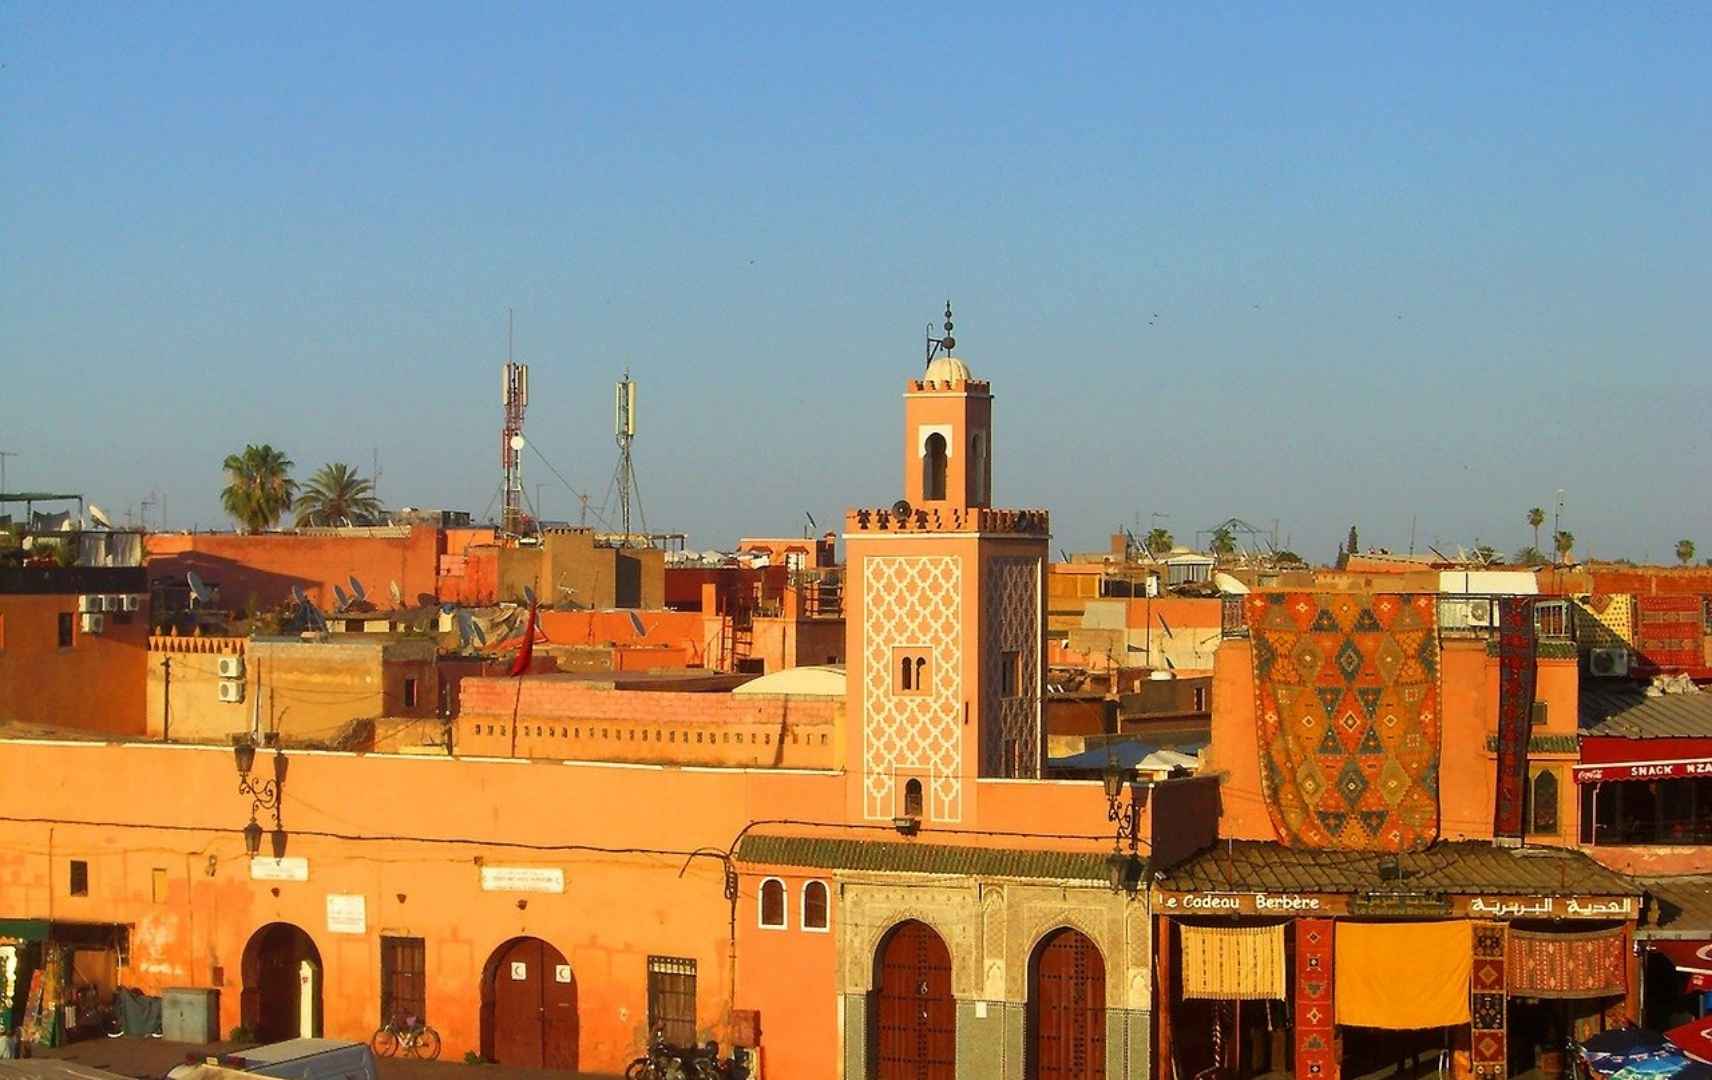 Hausfassaden in Marrakesch